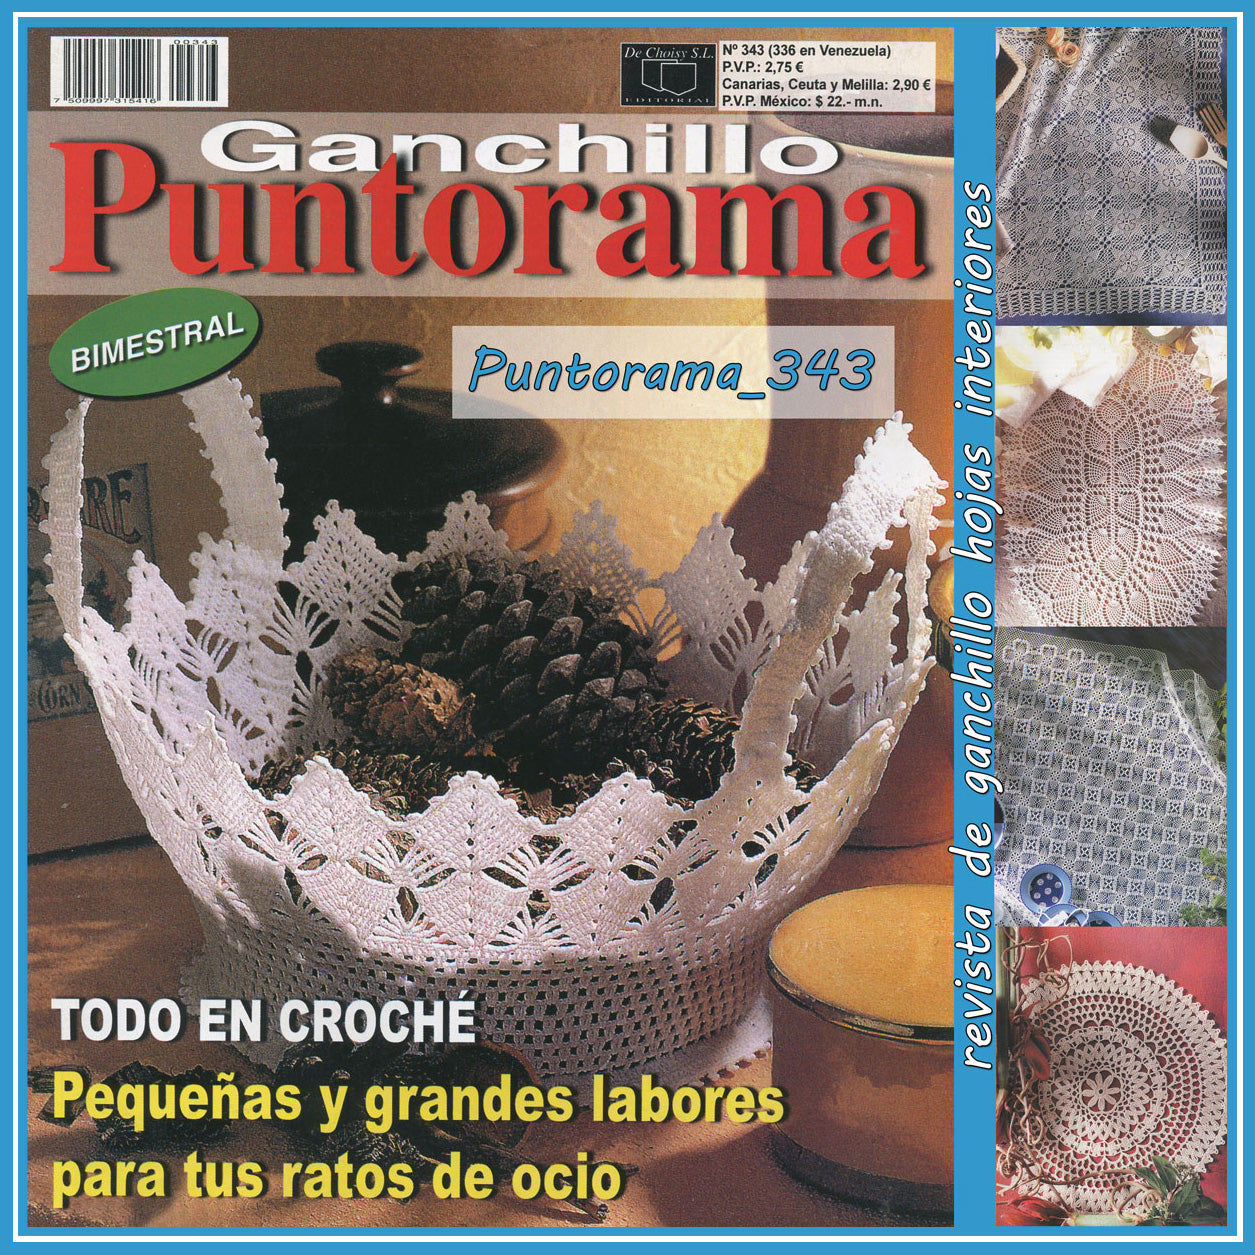 Revista Ganchillo Artistico y Puntorama pz